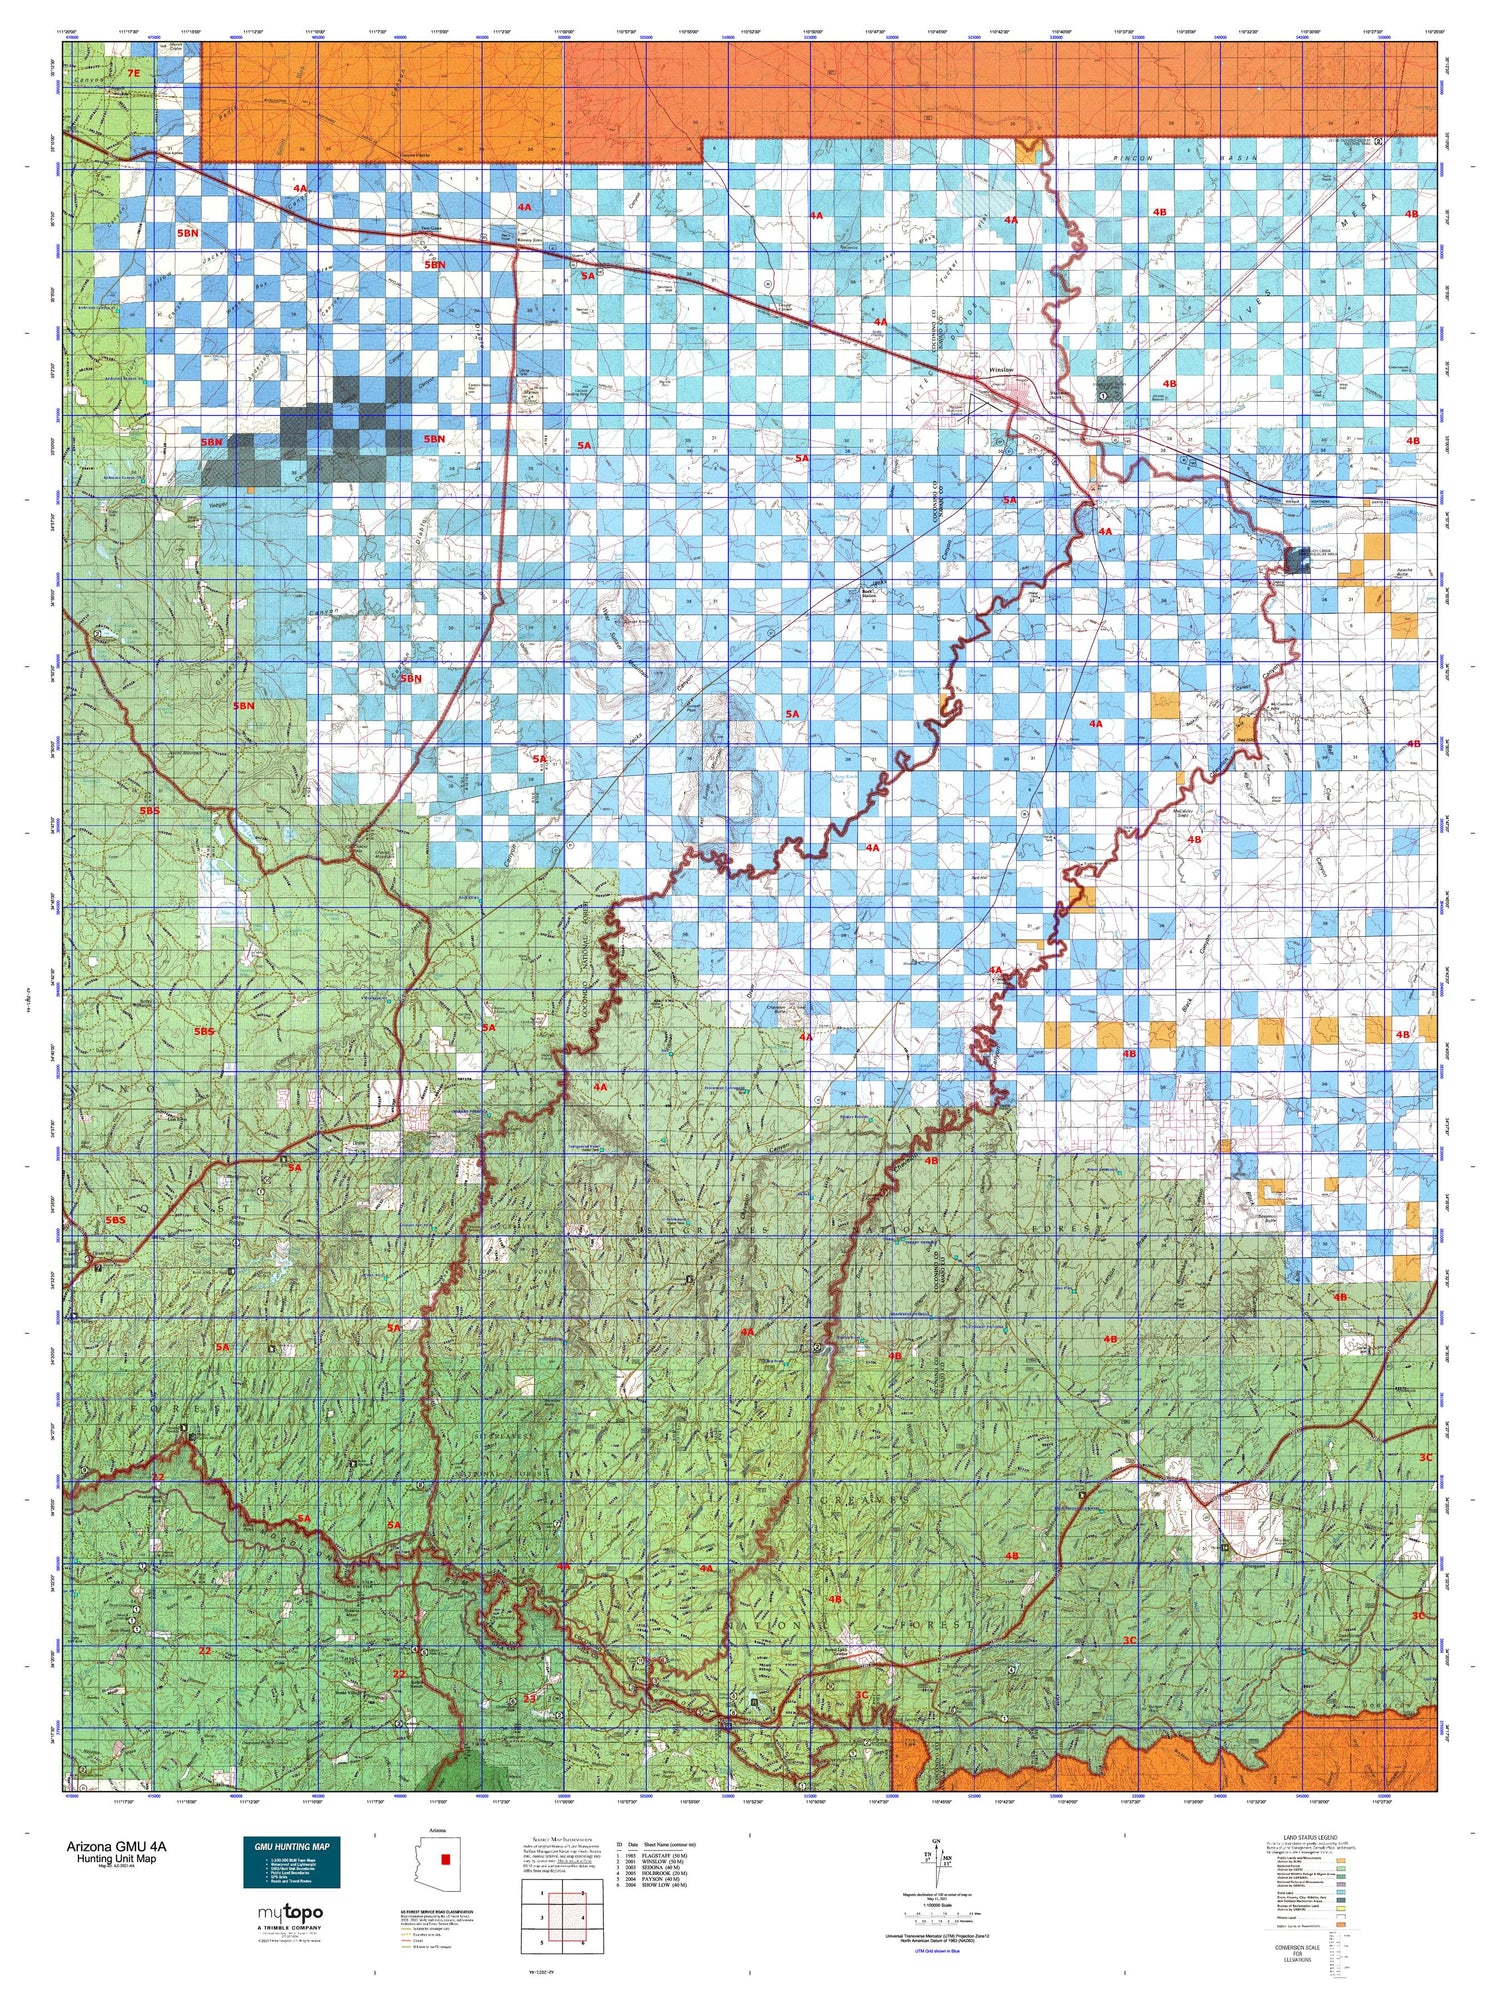 Arizona GMU 4A Map Image